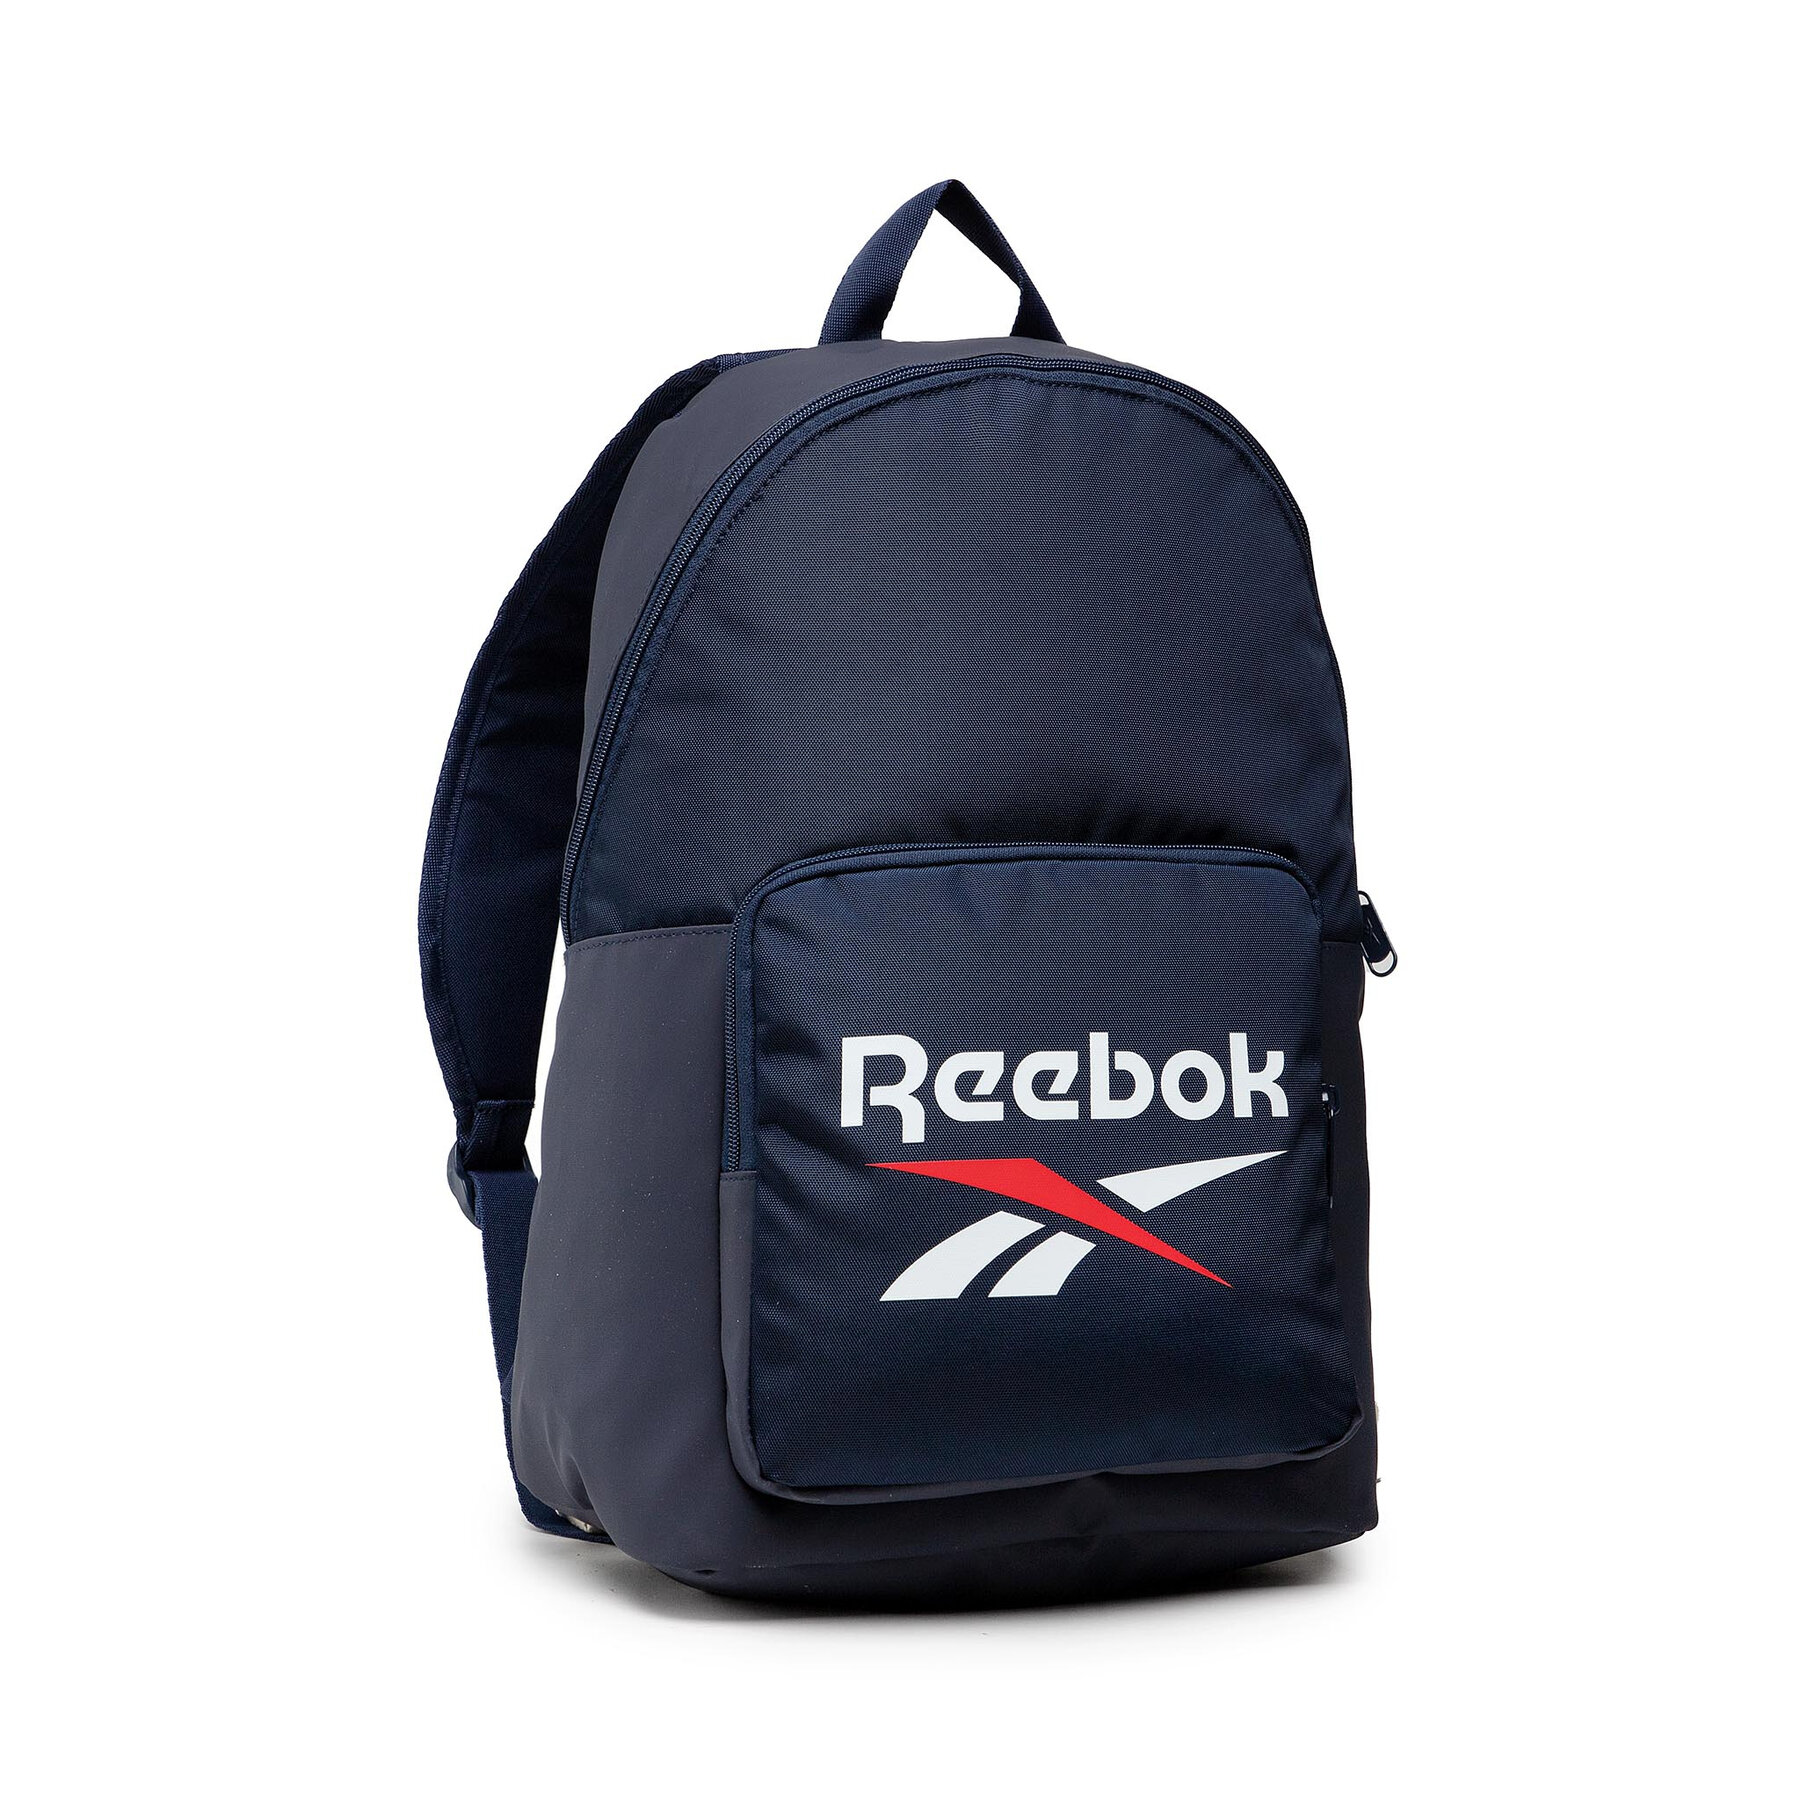 Comprar en oferta Reebok Classics Foundation Backpack